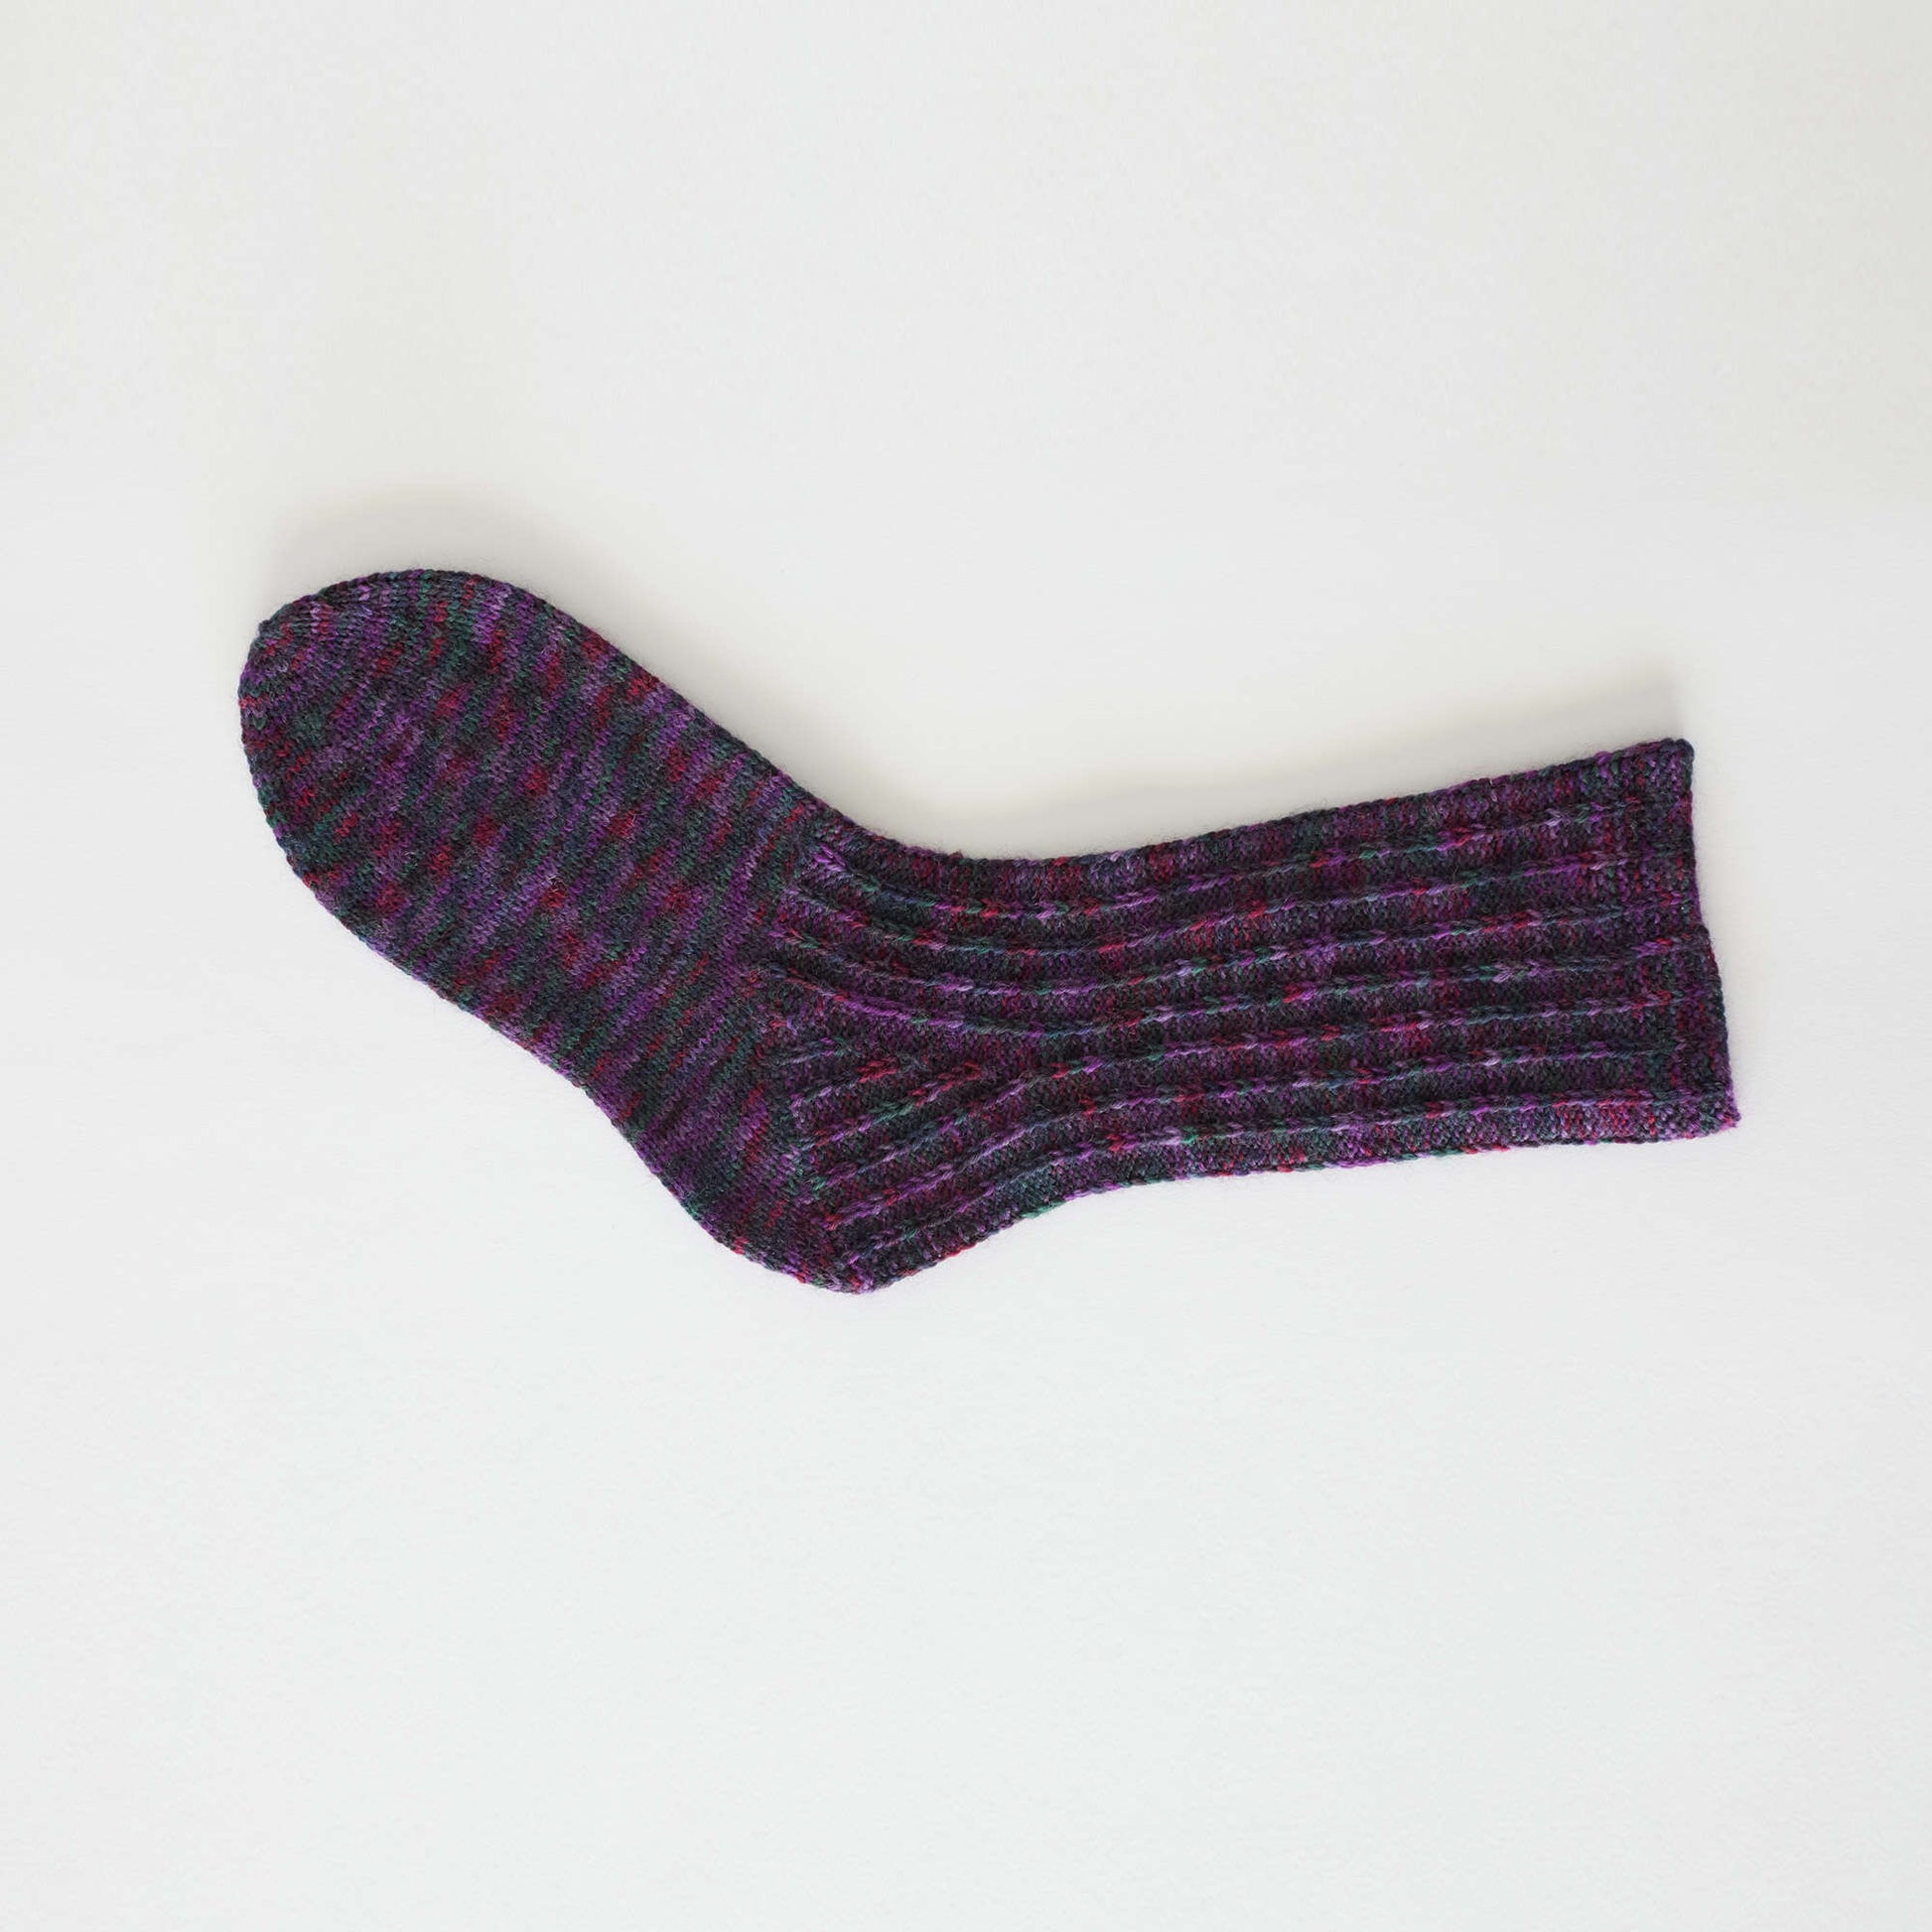 Free Red Heart Slip Rib Socks Knit Pattern